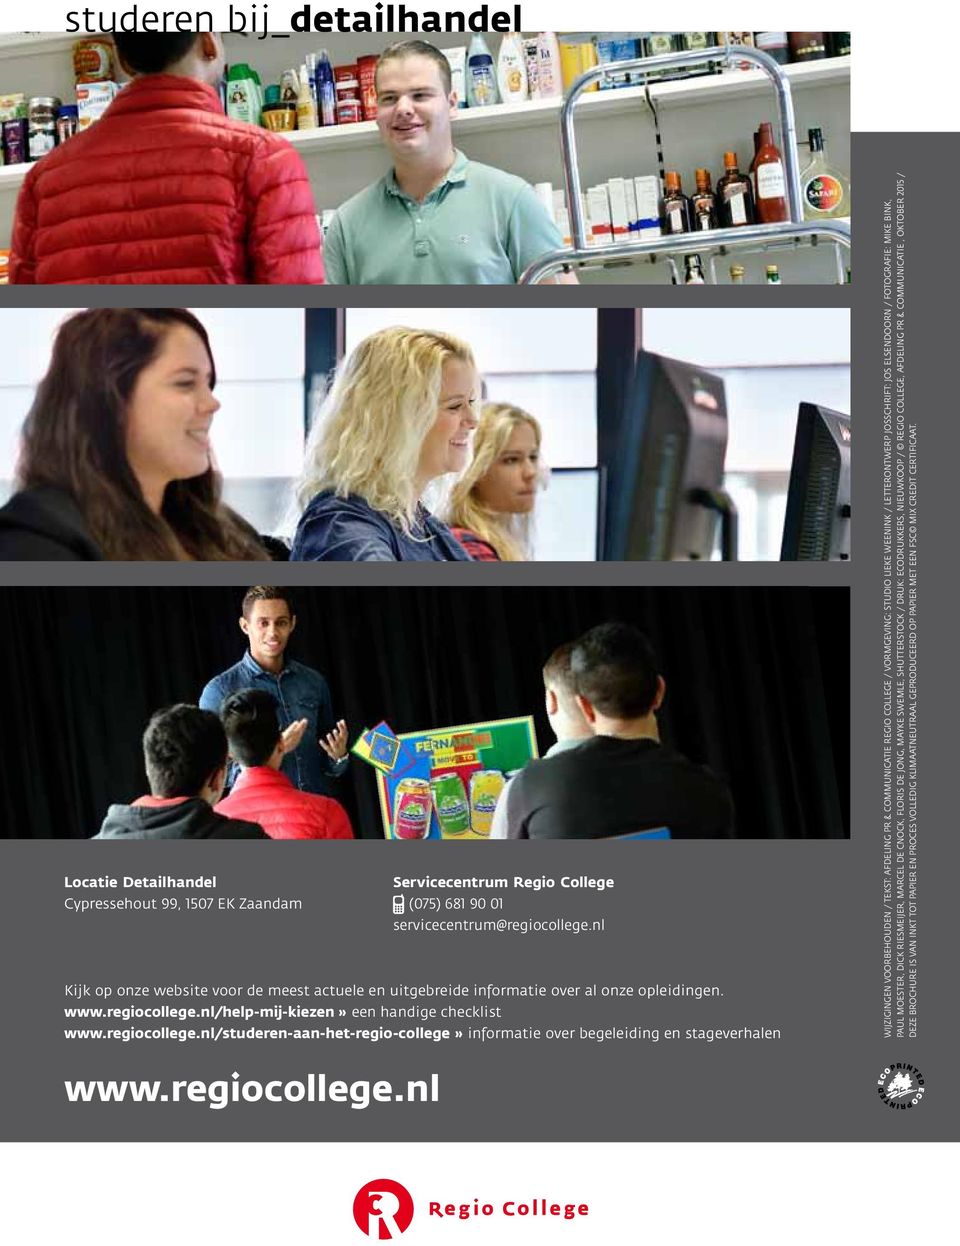 nl/help-mij-kiezen» een handige checklist www.regiocollege.